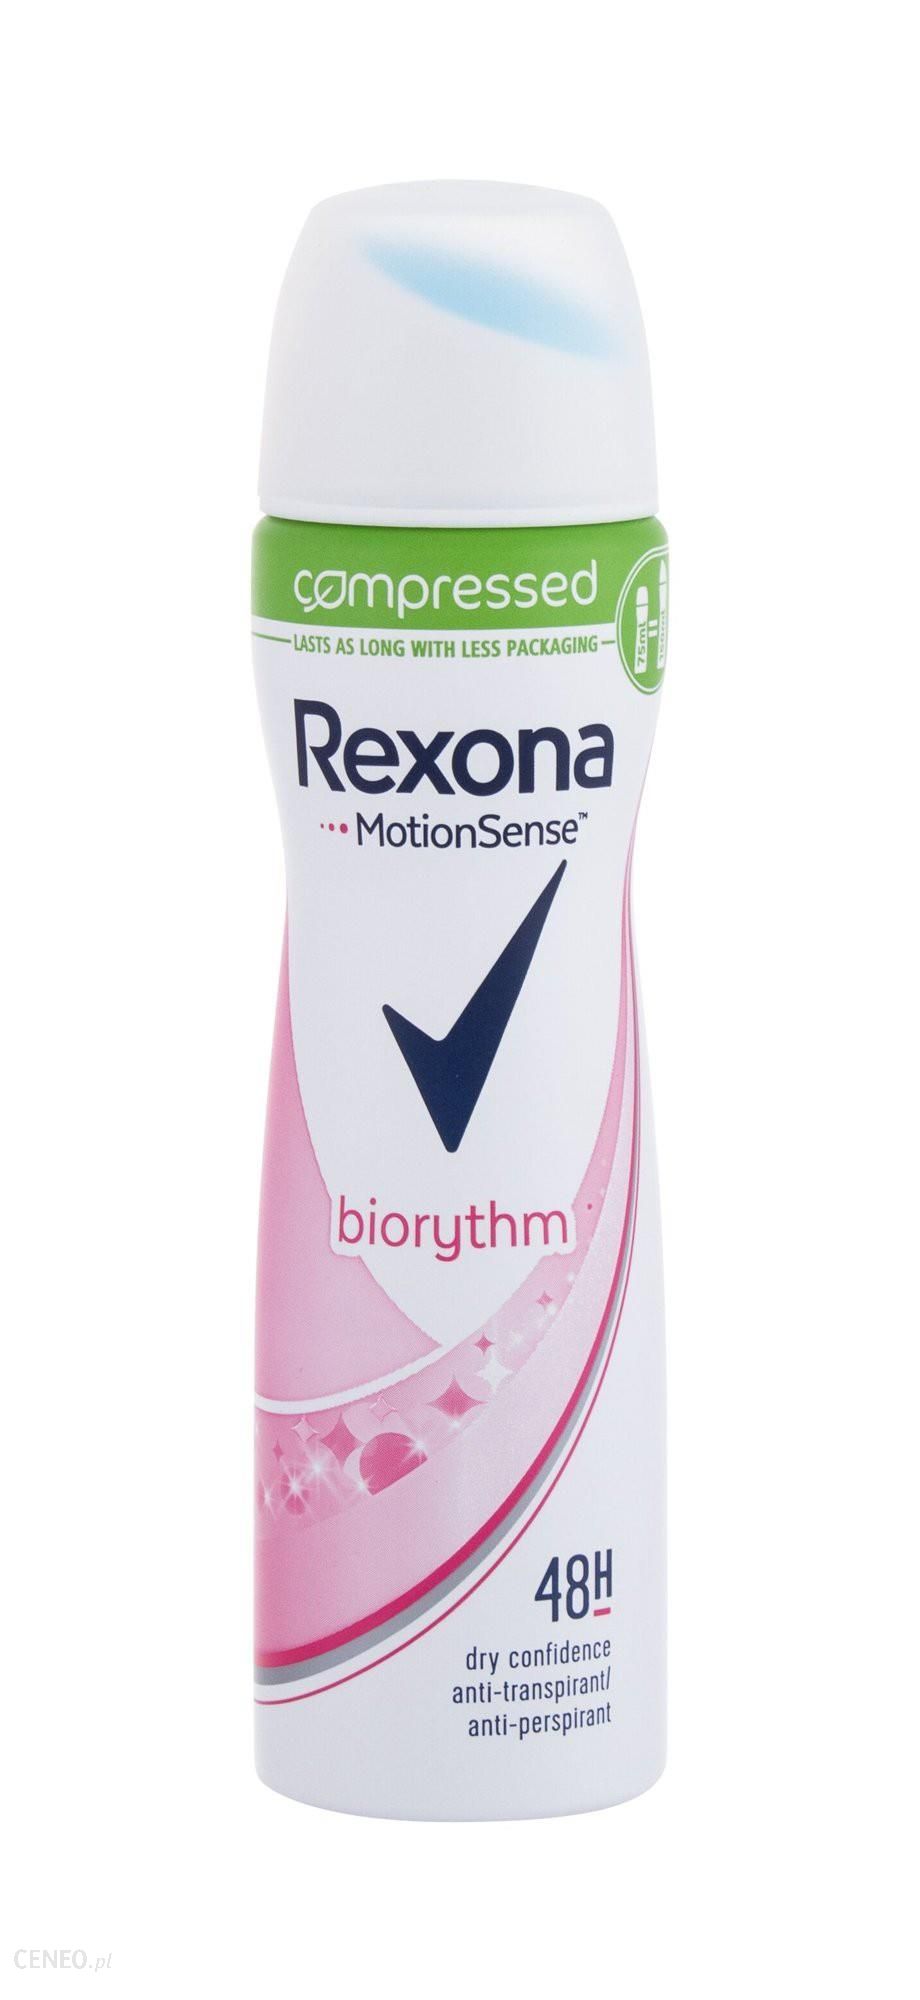 Rexona Motionsense Biorythm 48H Antyperspirant 75ml